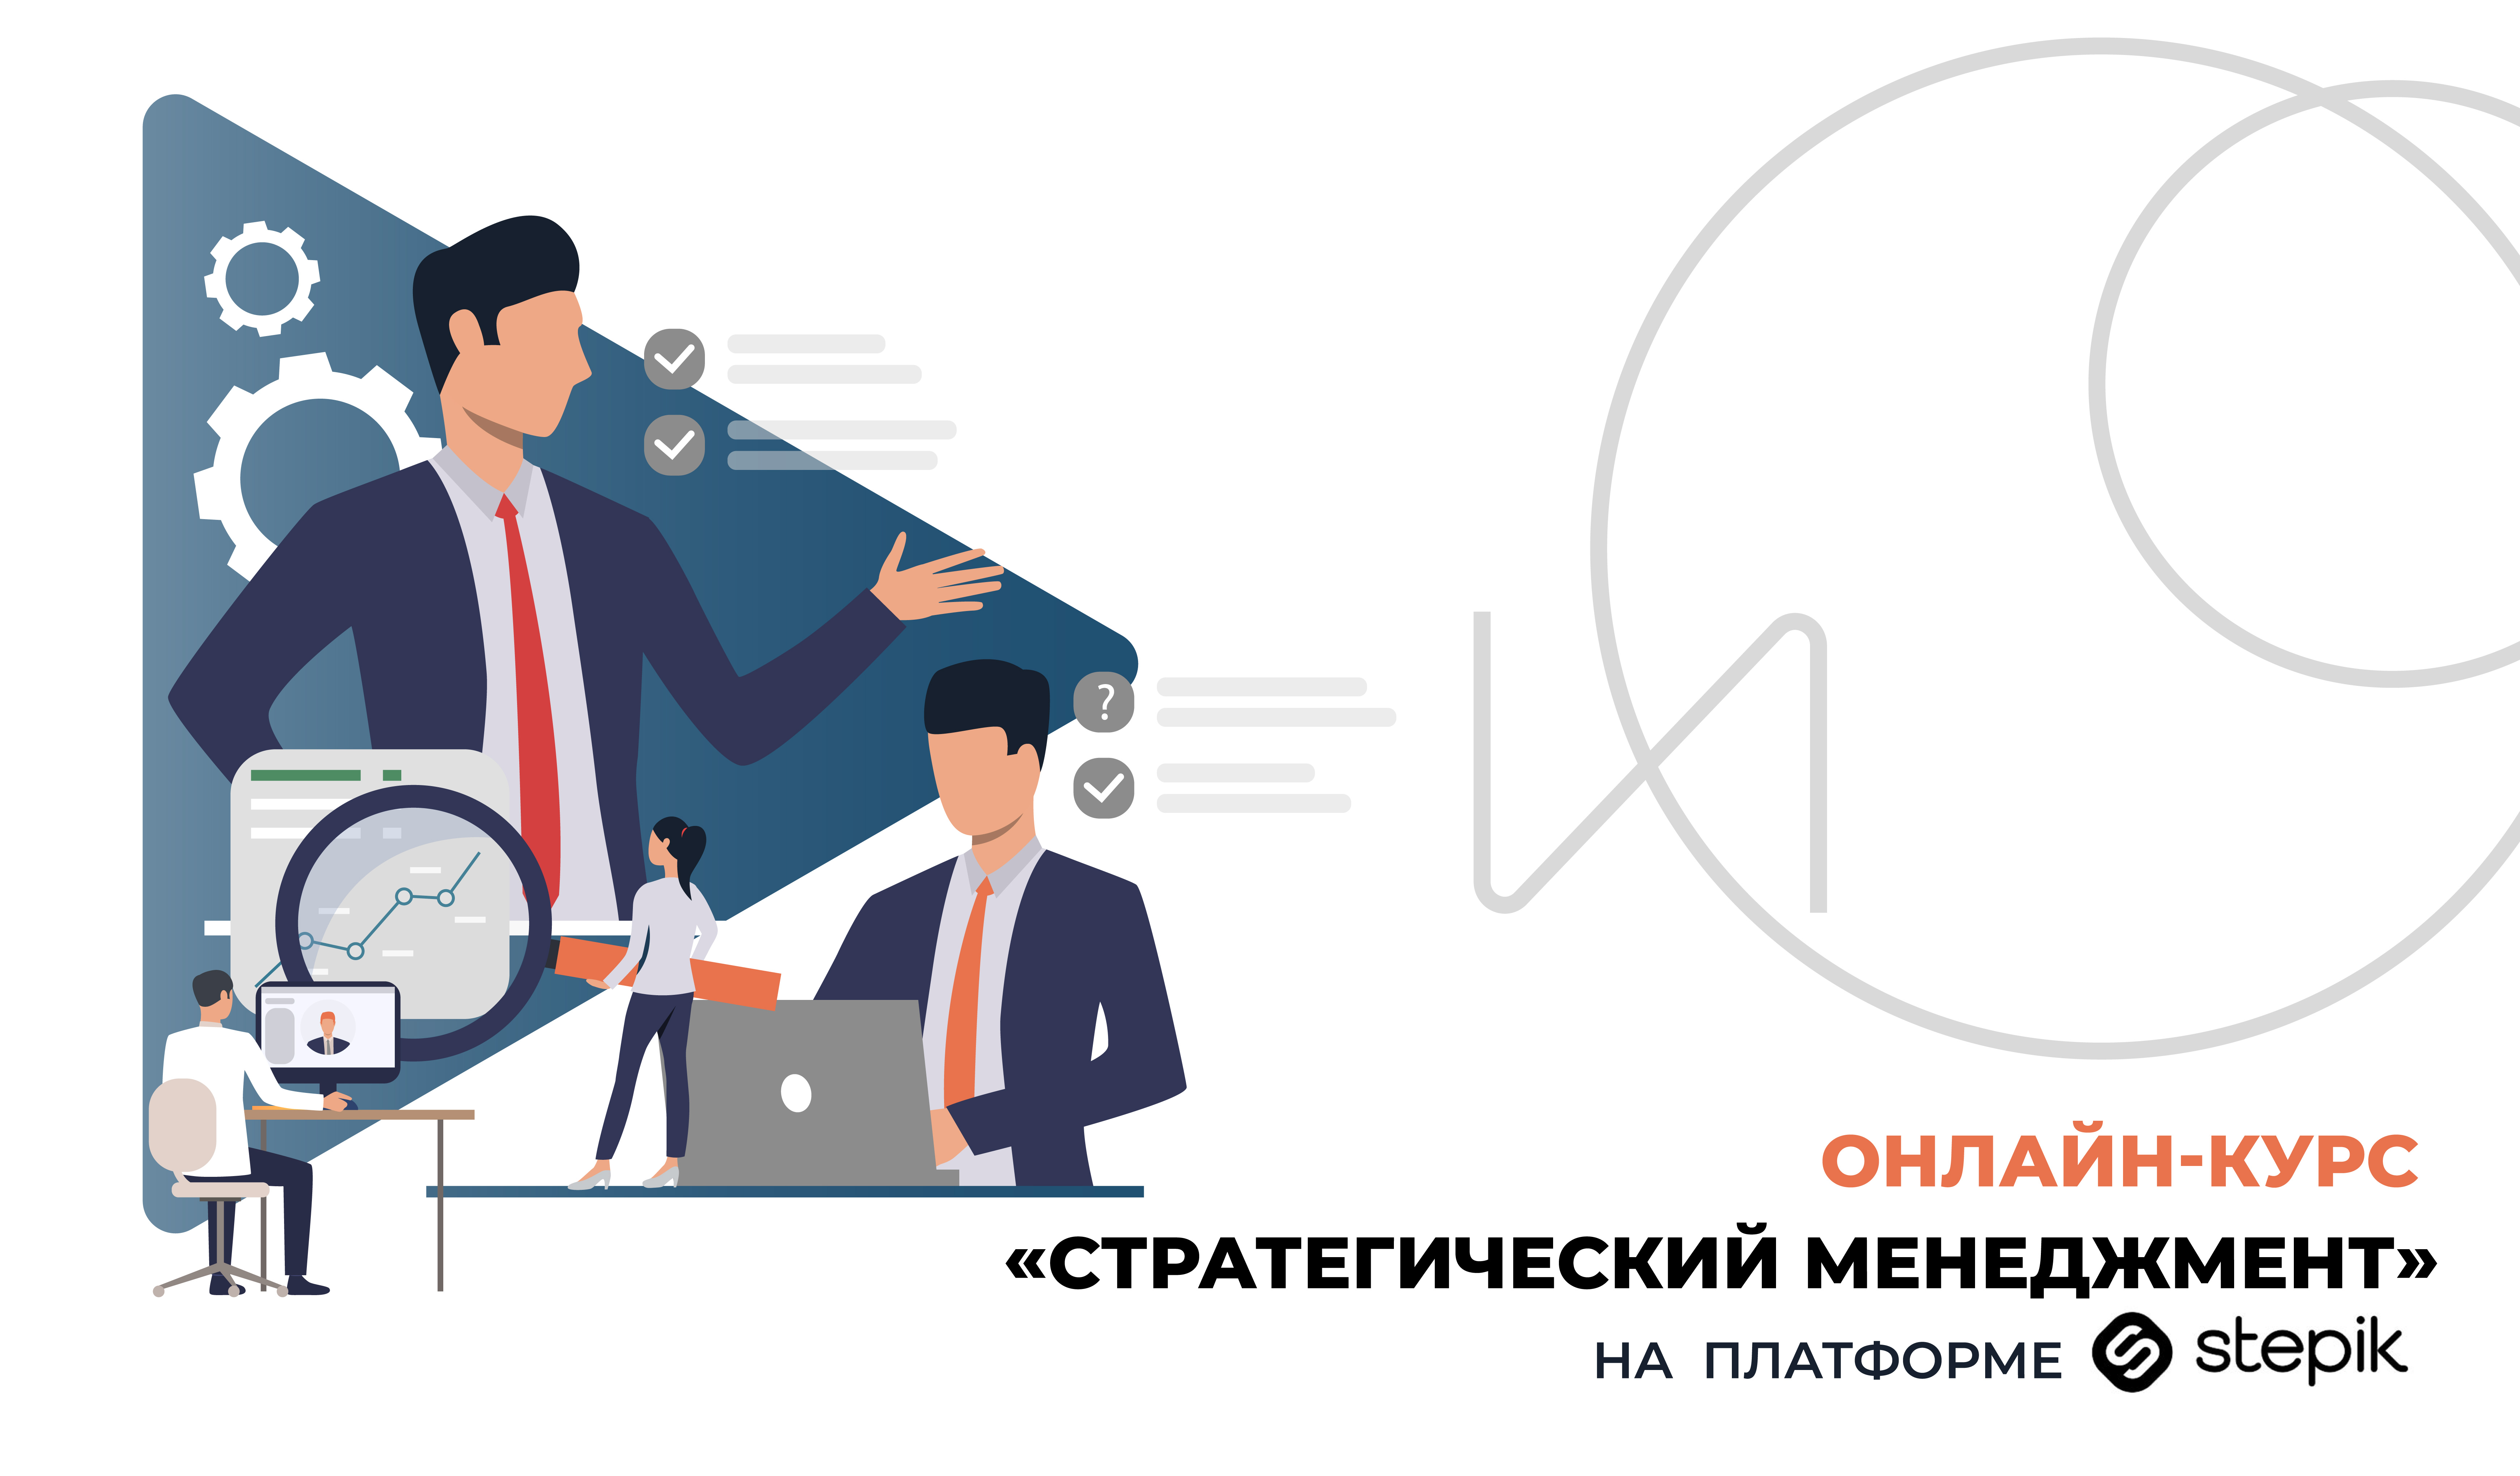 Институт онлайн-образования запустил бесплатный онлайн-курс на Stepik 